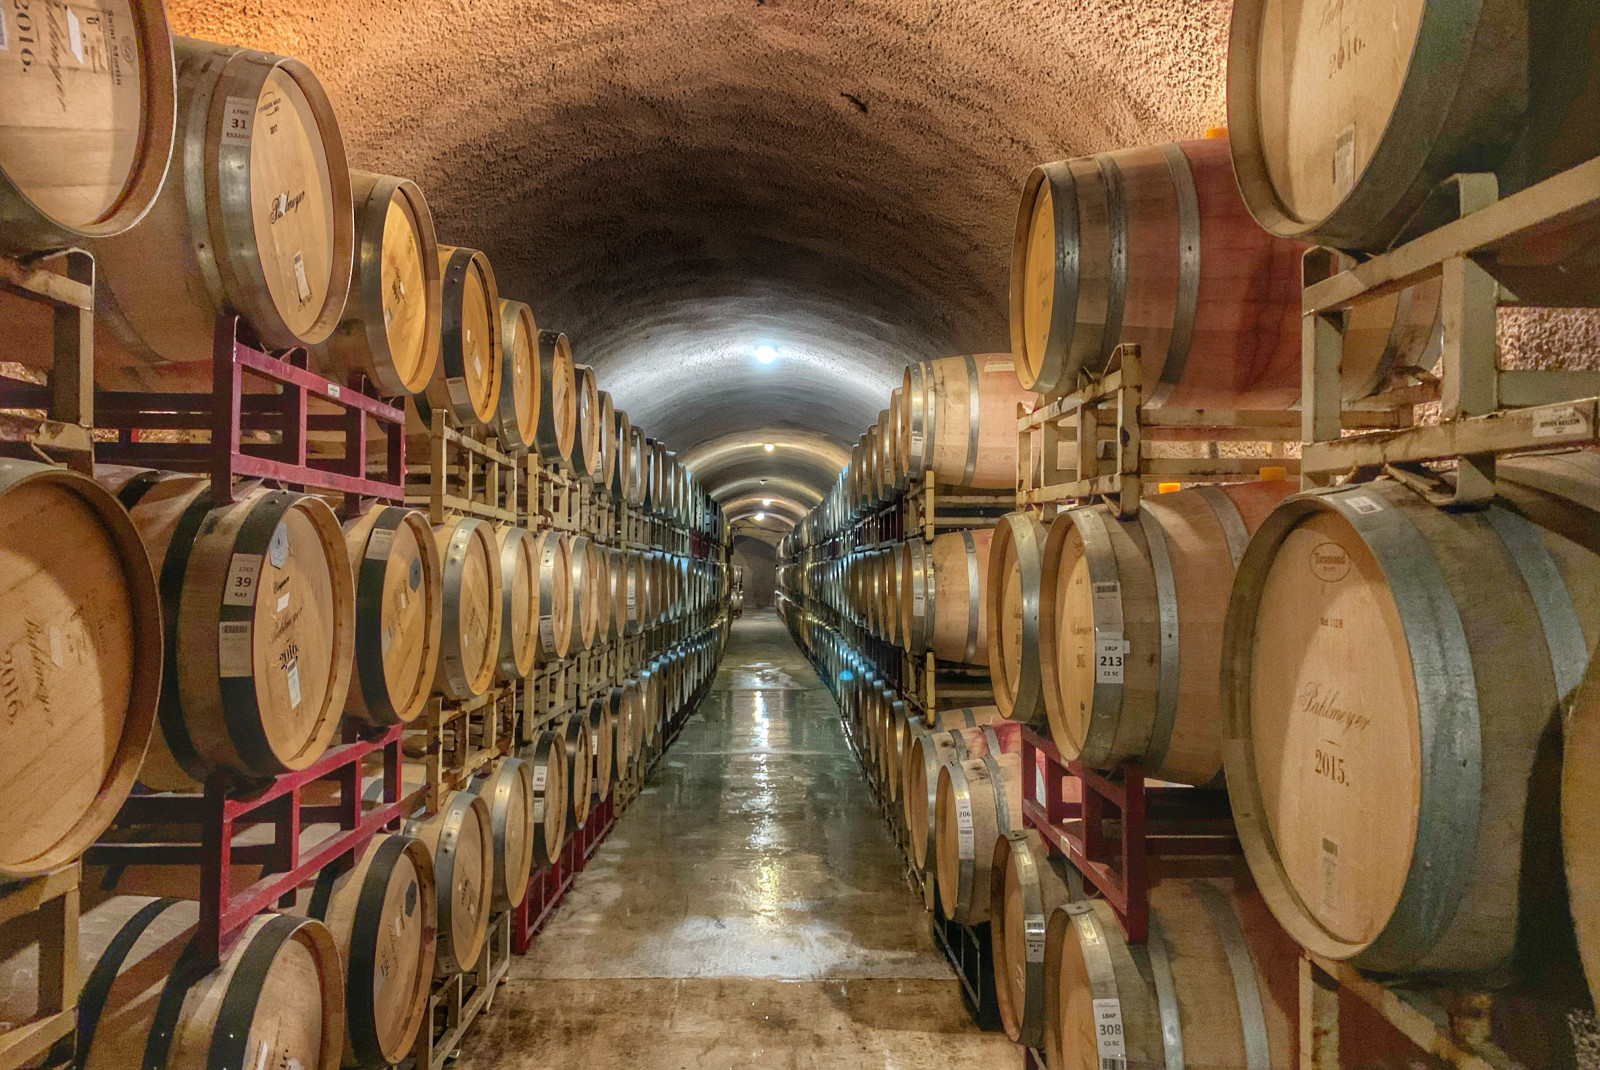 Rows of wine barrels in Napa Valley, California